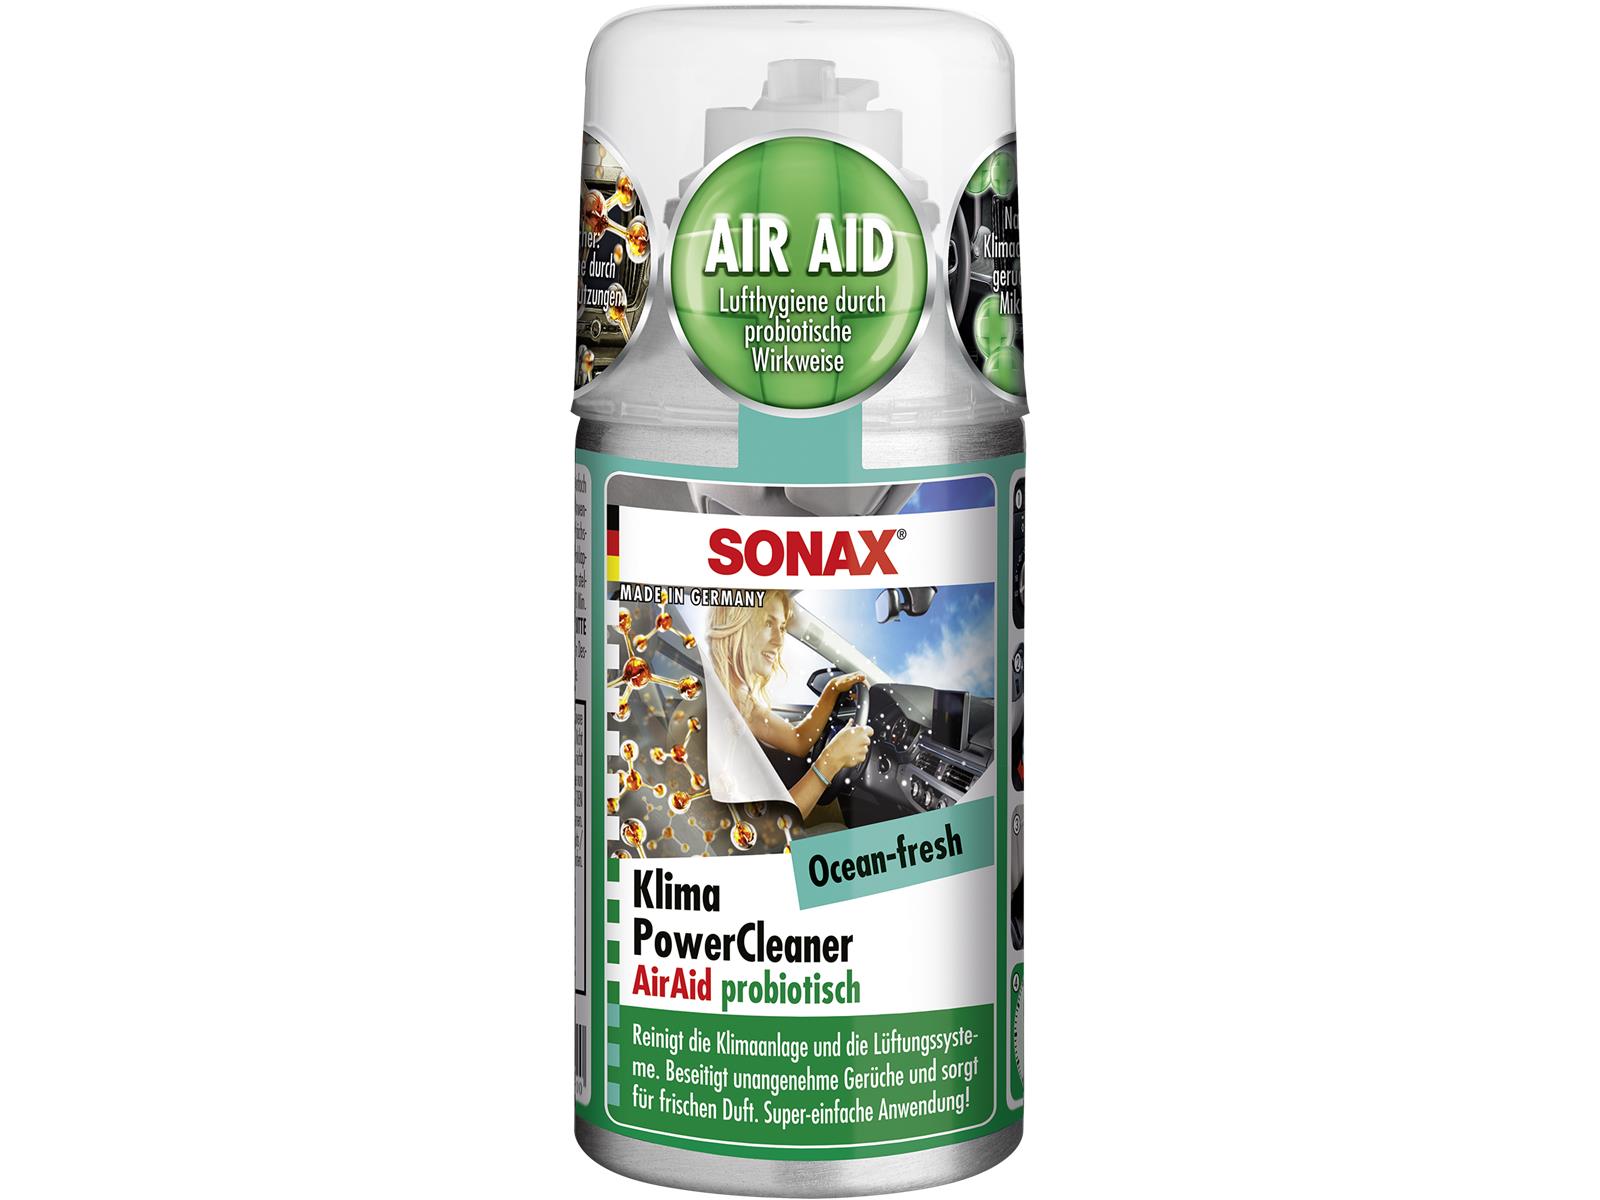 SONAX 03236000 KlimaPowerCleaner AirAid probiotisch Ocean-fresh 100 ml